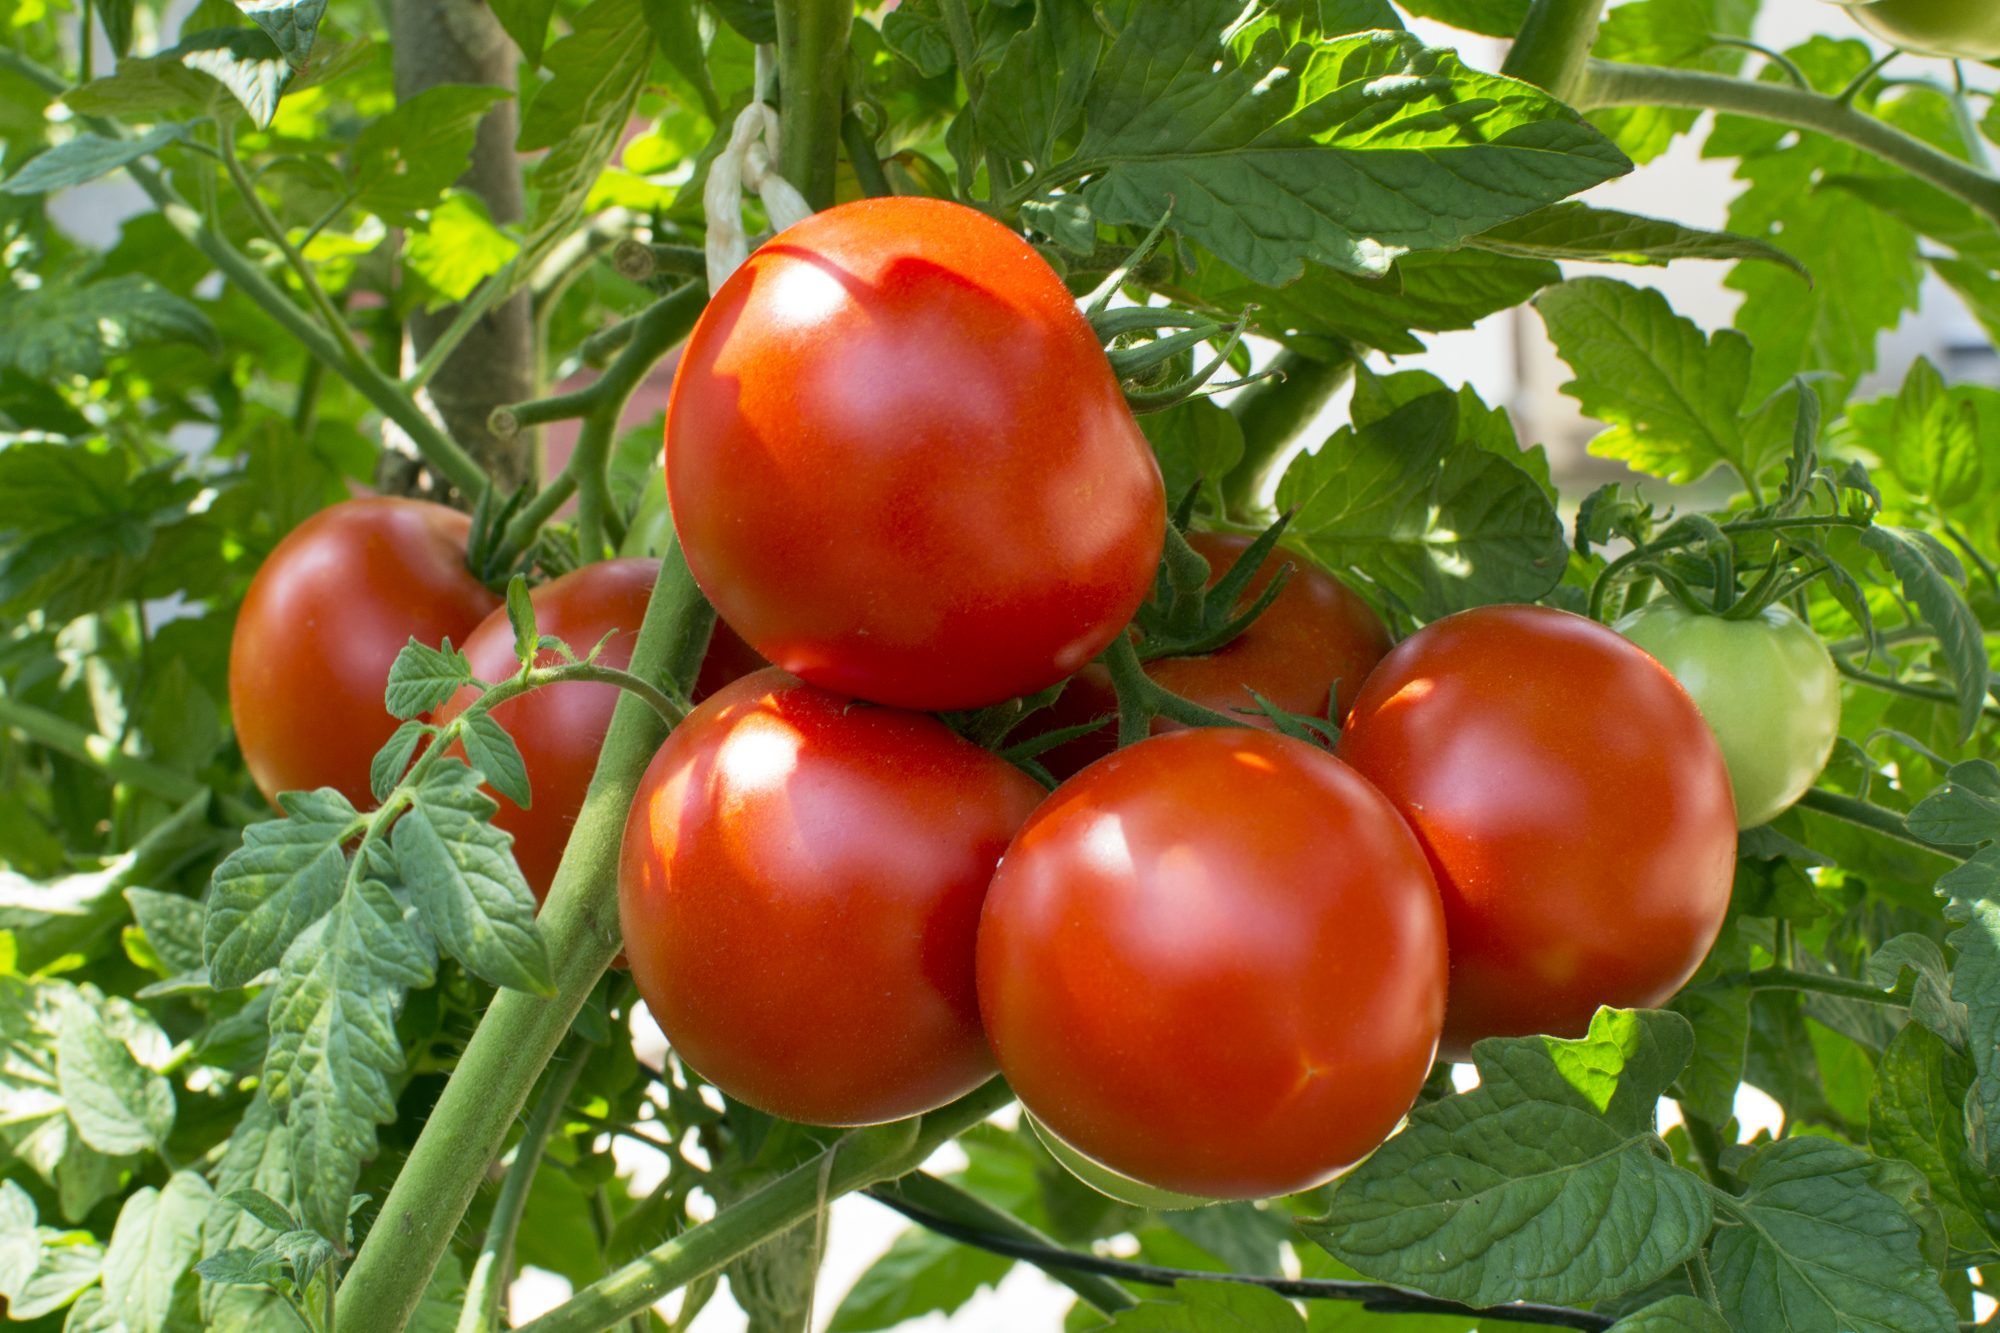 המדריך האולטימטיבי לגידול עגבניות משלך